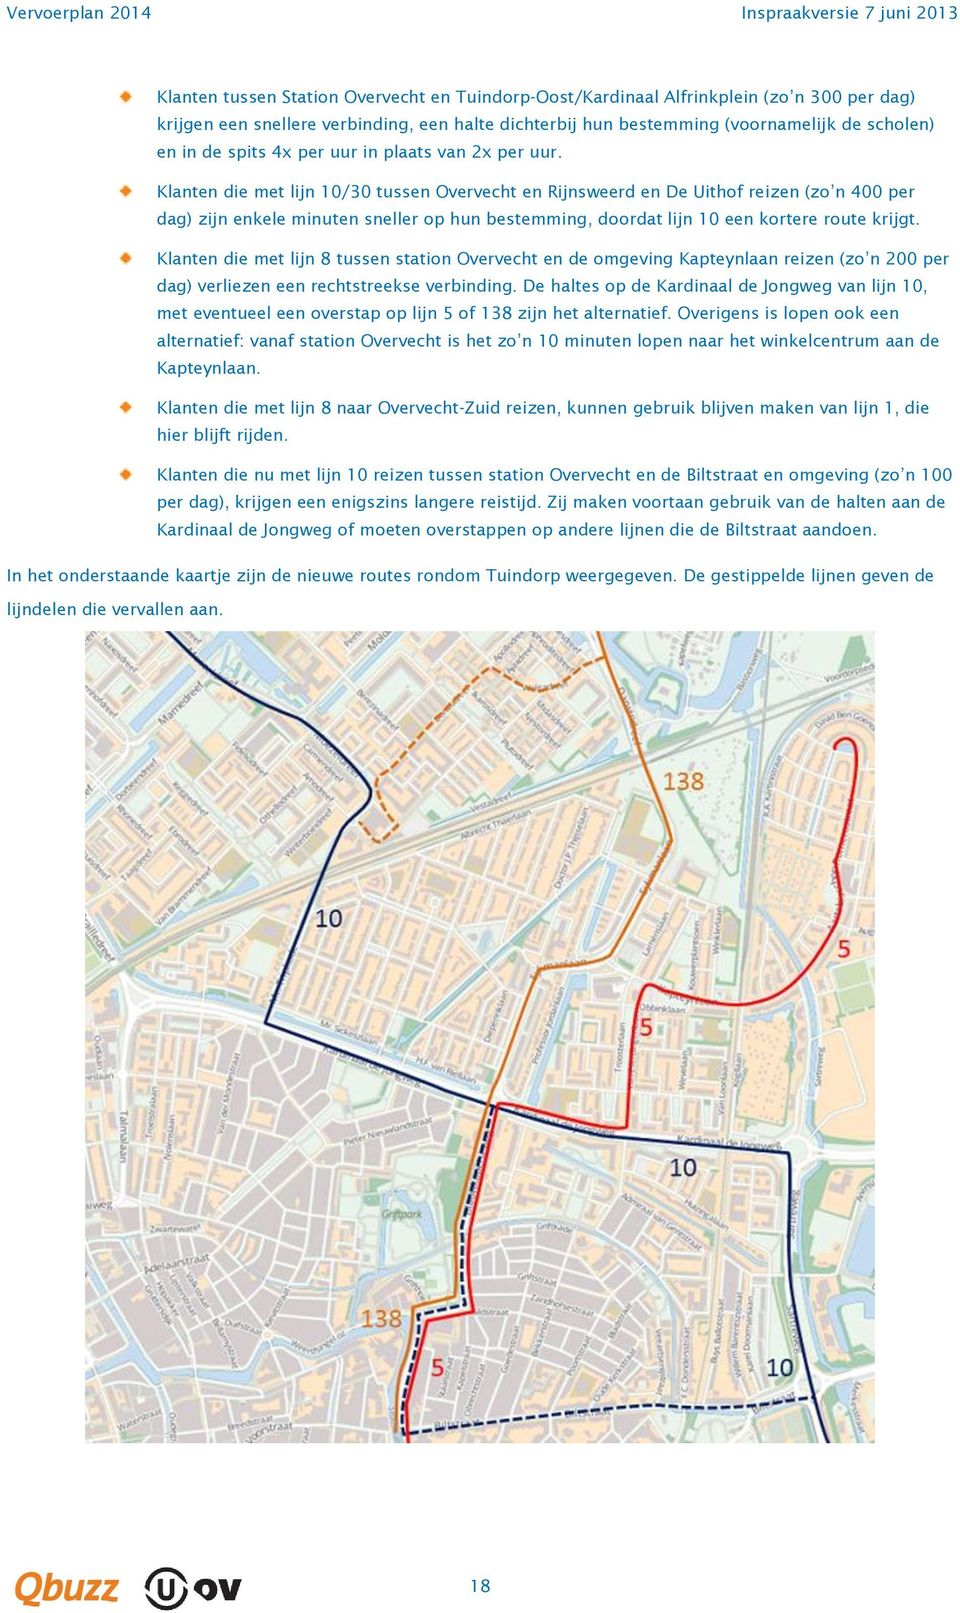 Klanten die met lijn 10/30 tussen Overvecht en Rijnsweerd en De Uithof reizen (zo n 00 per dag) zijn enkele minuten sneller op hun bestemming, doordat lijn 10 een kortere route krijgt.